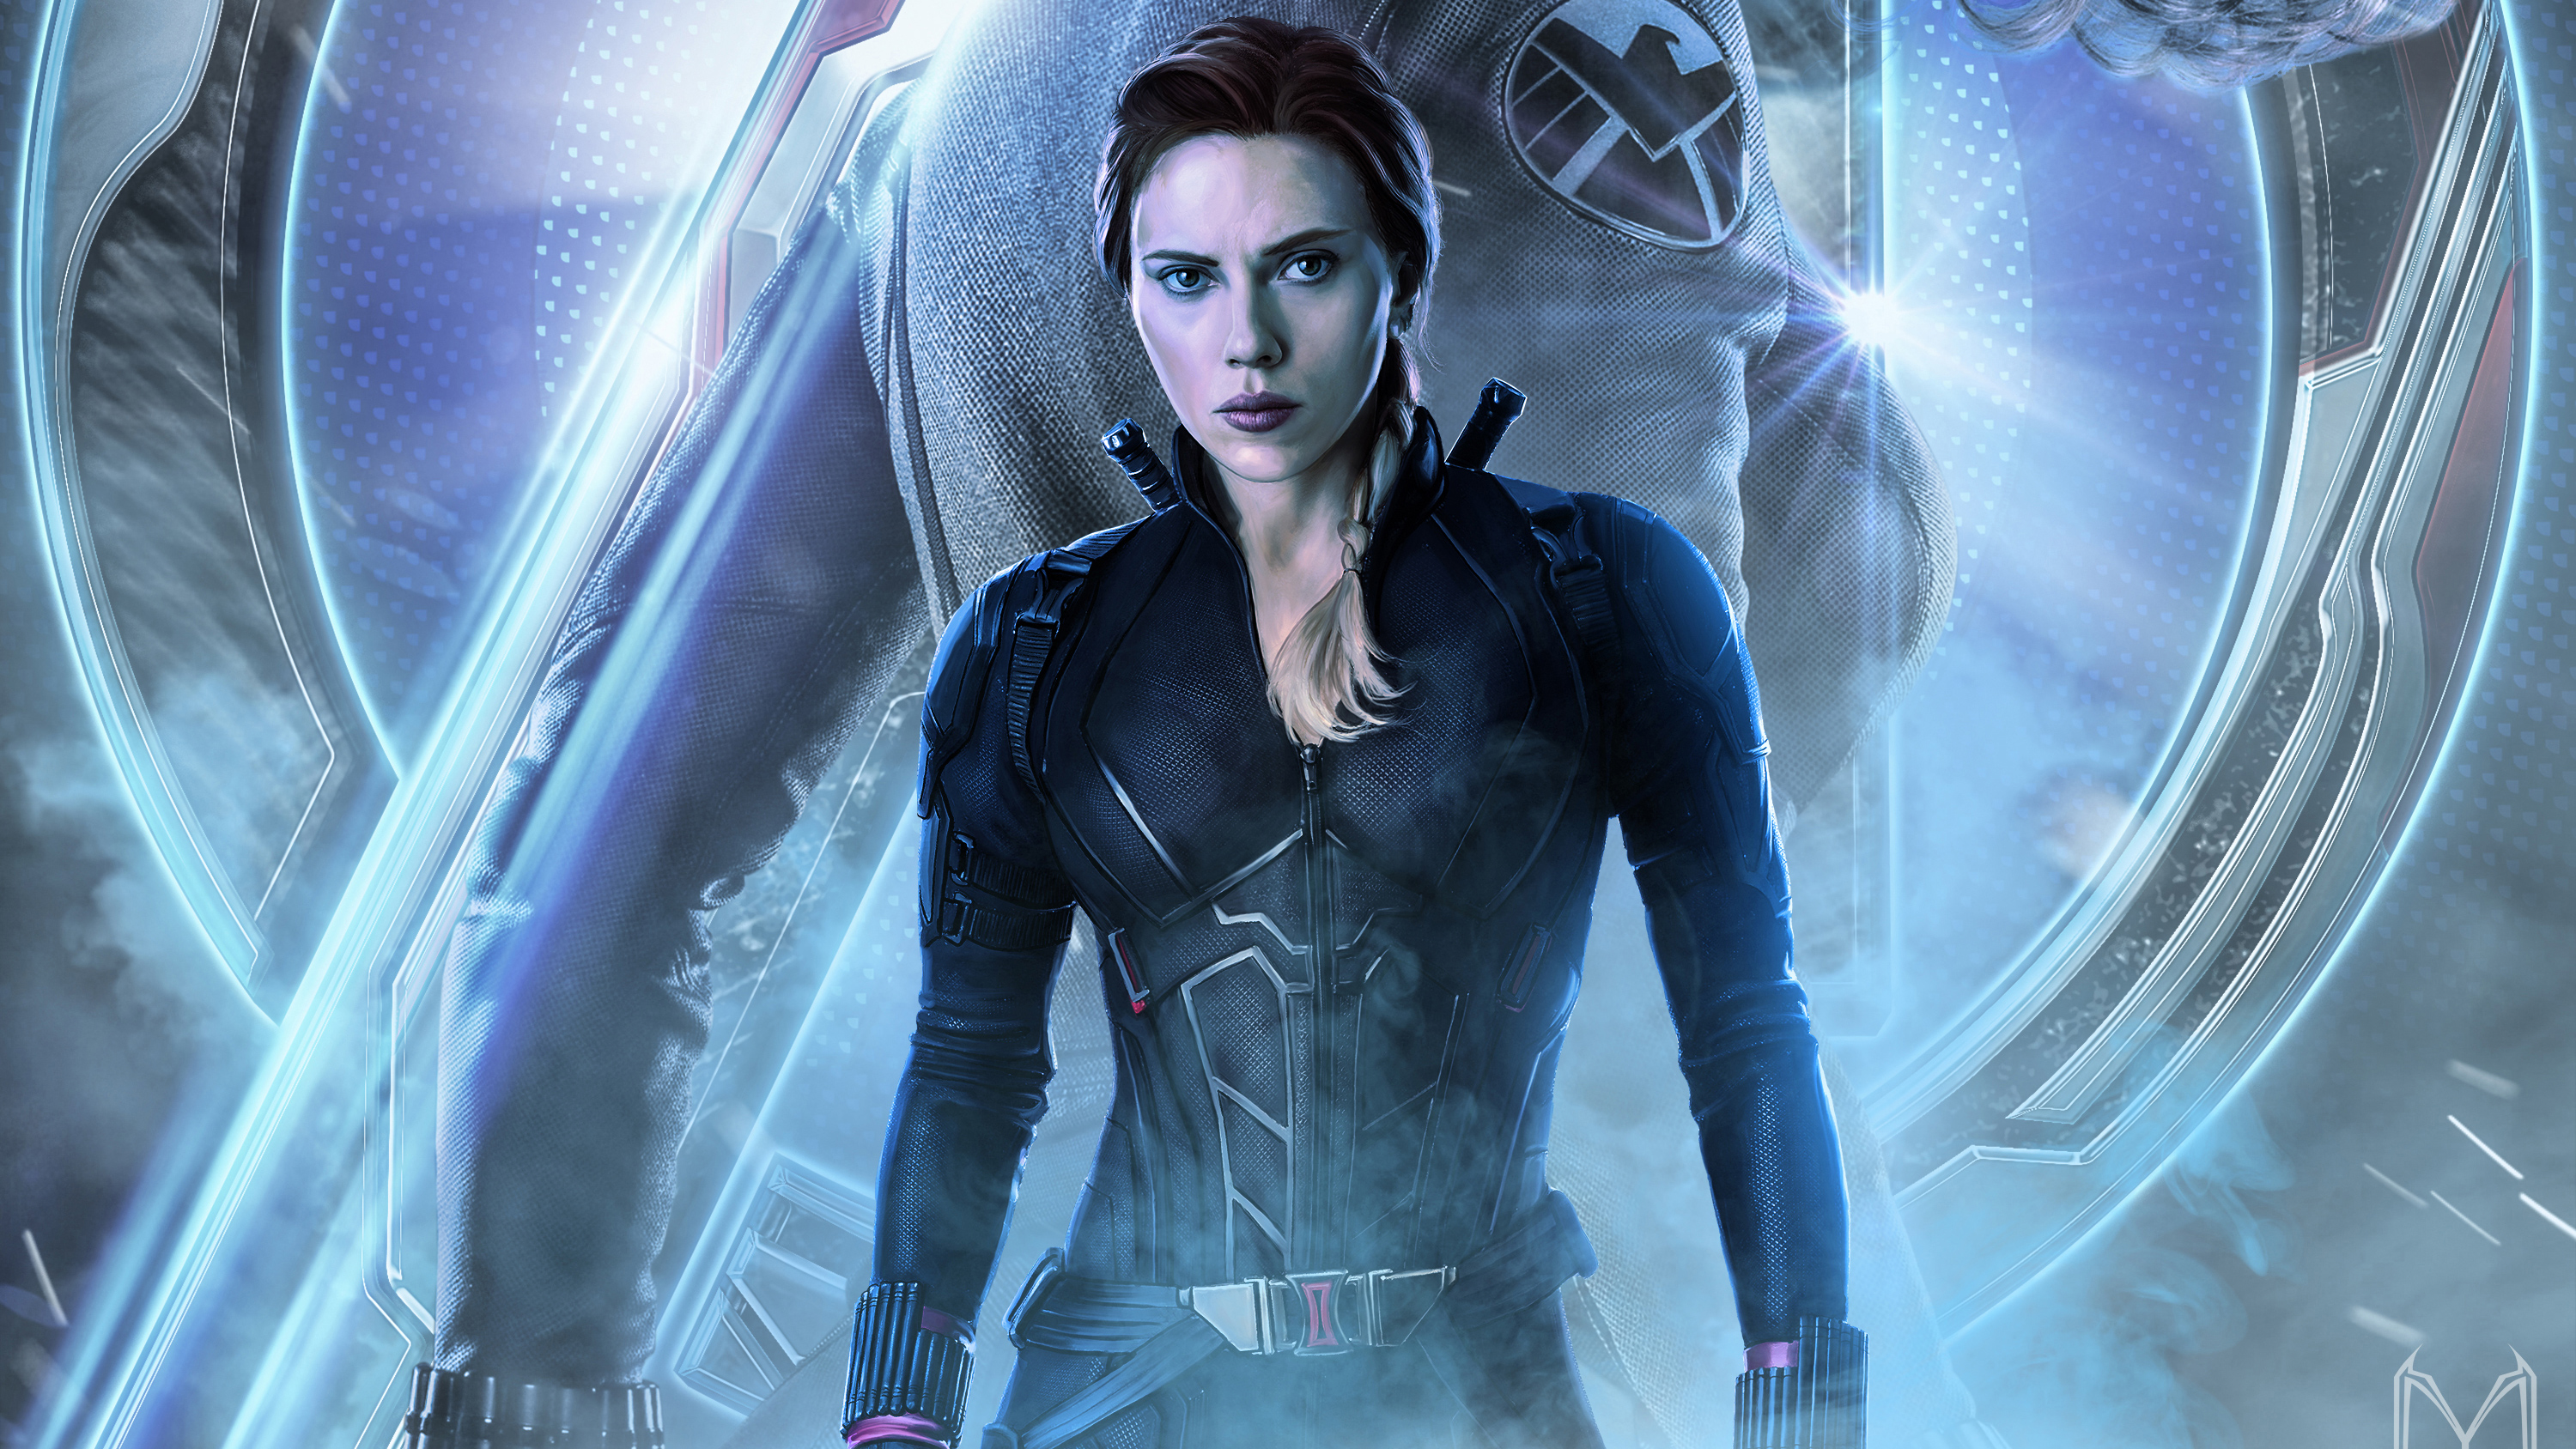 Black Widow In Avengers Endgame 2019, Hd Movies, 4k - Avengers Endgame Black Widow , HD Wallpaper & Backgrounds